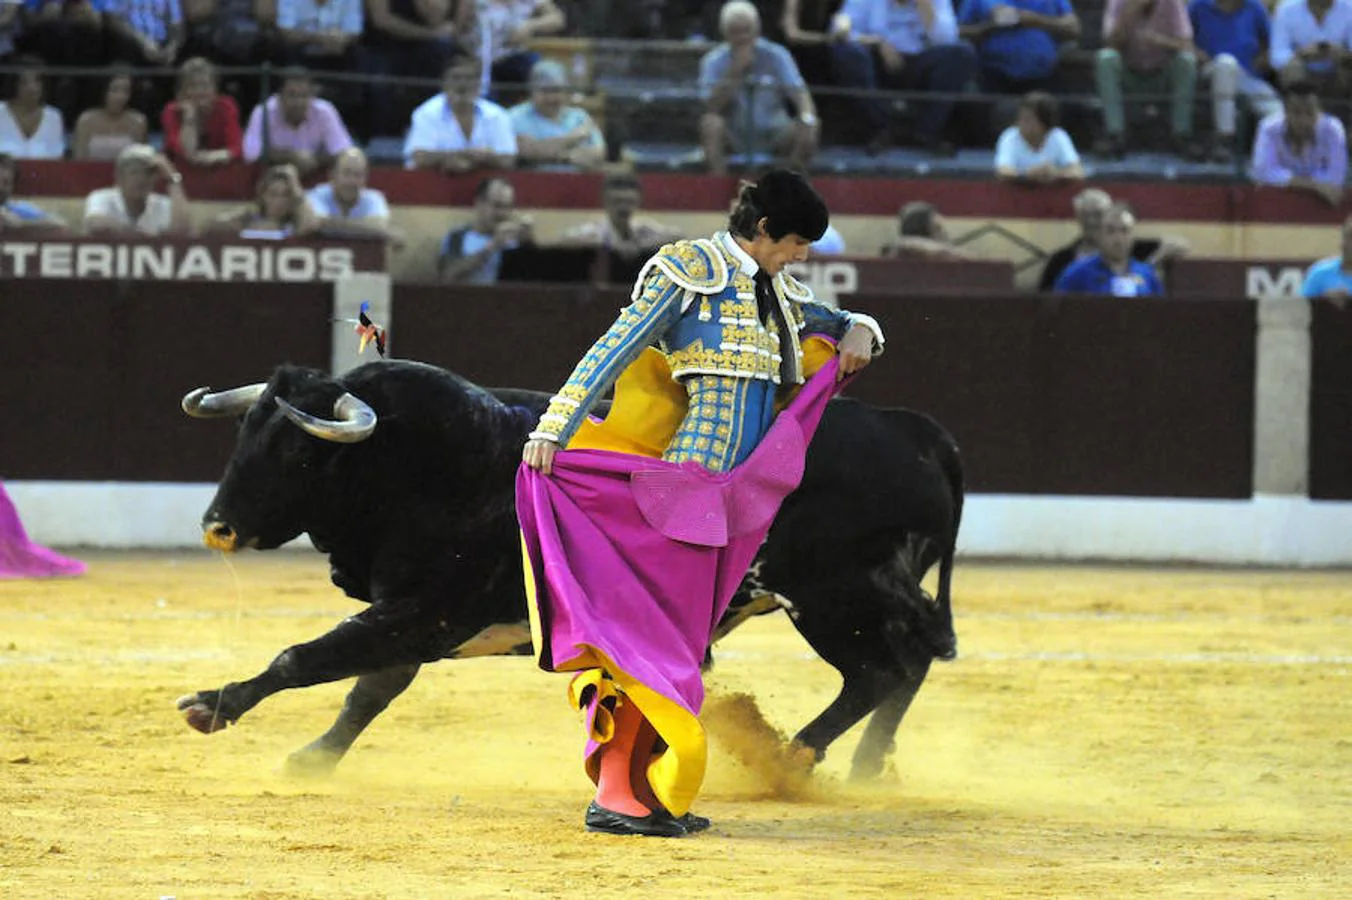 Juan José Padilla cortó dos orejas y rabo en su segundo toro.